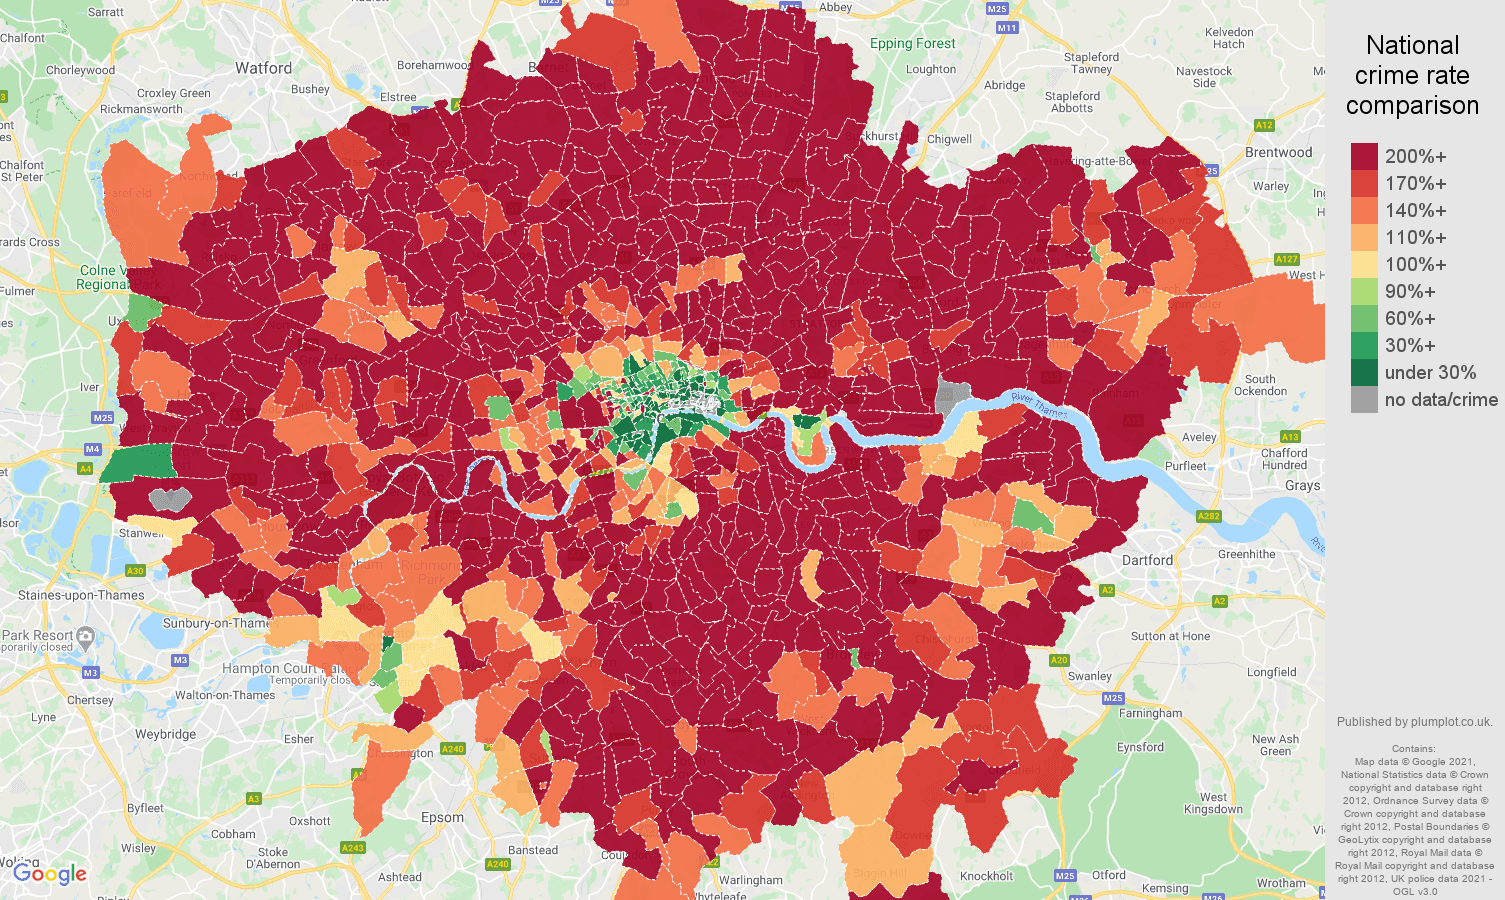 London vehicle crime rate comparison map